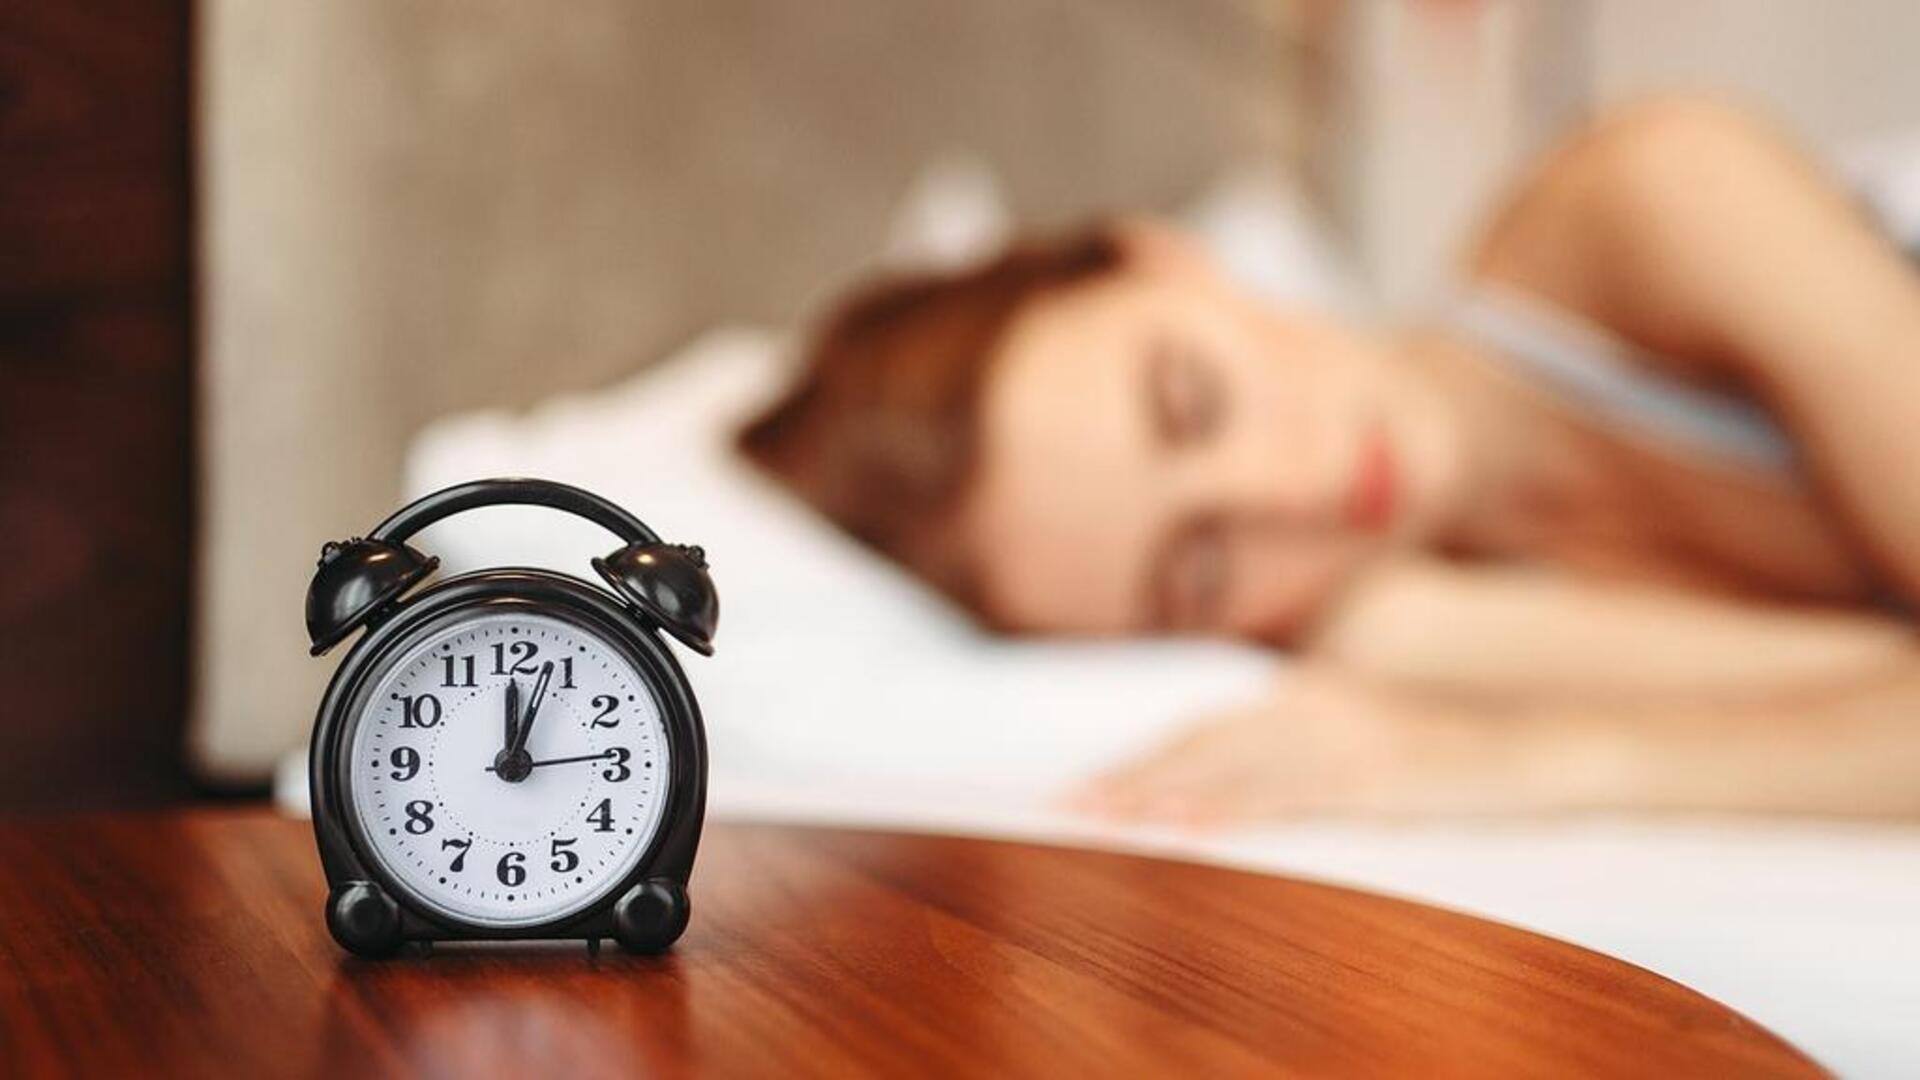 Tes darah dapat mendeteksi kurang tidur, menurut temuan penelitian 